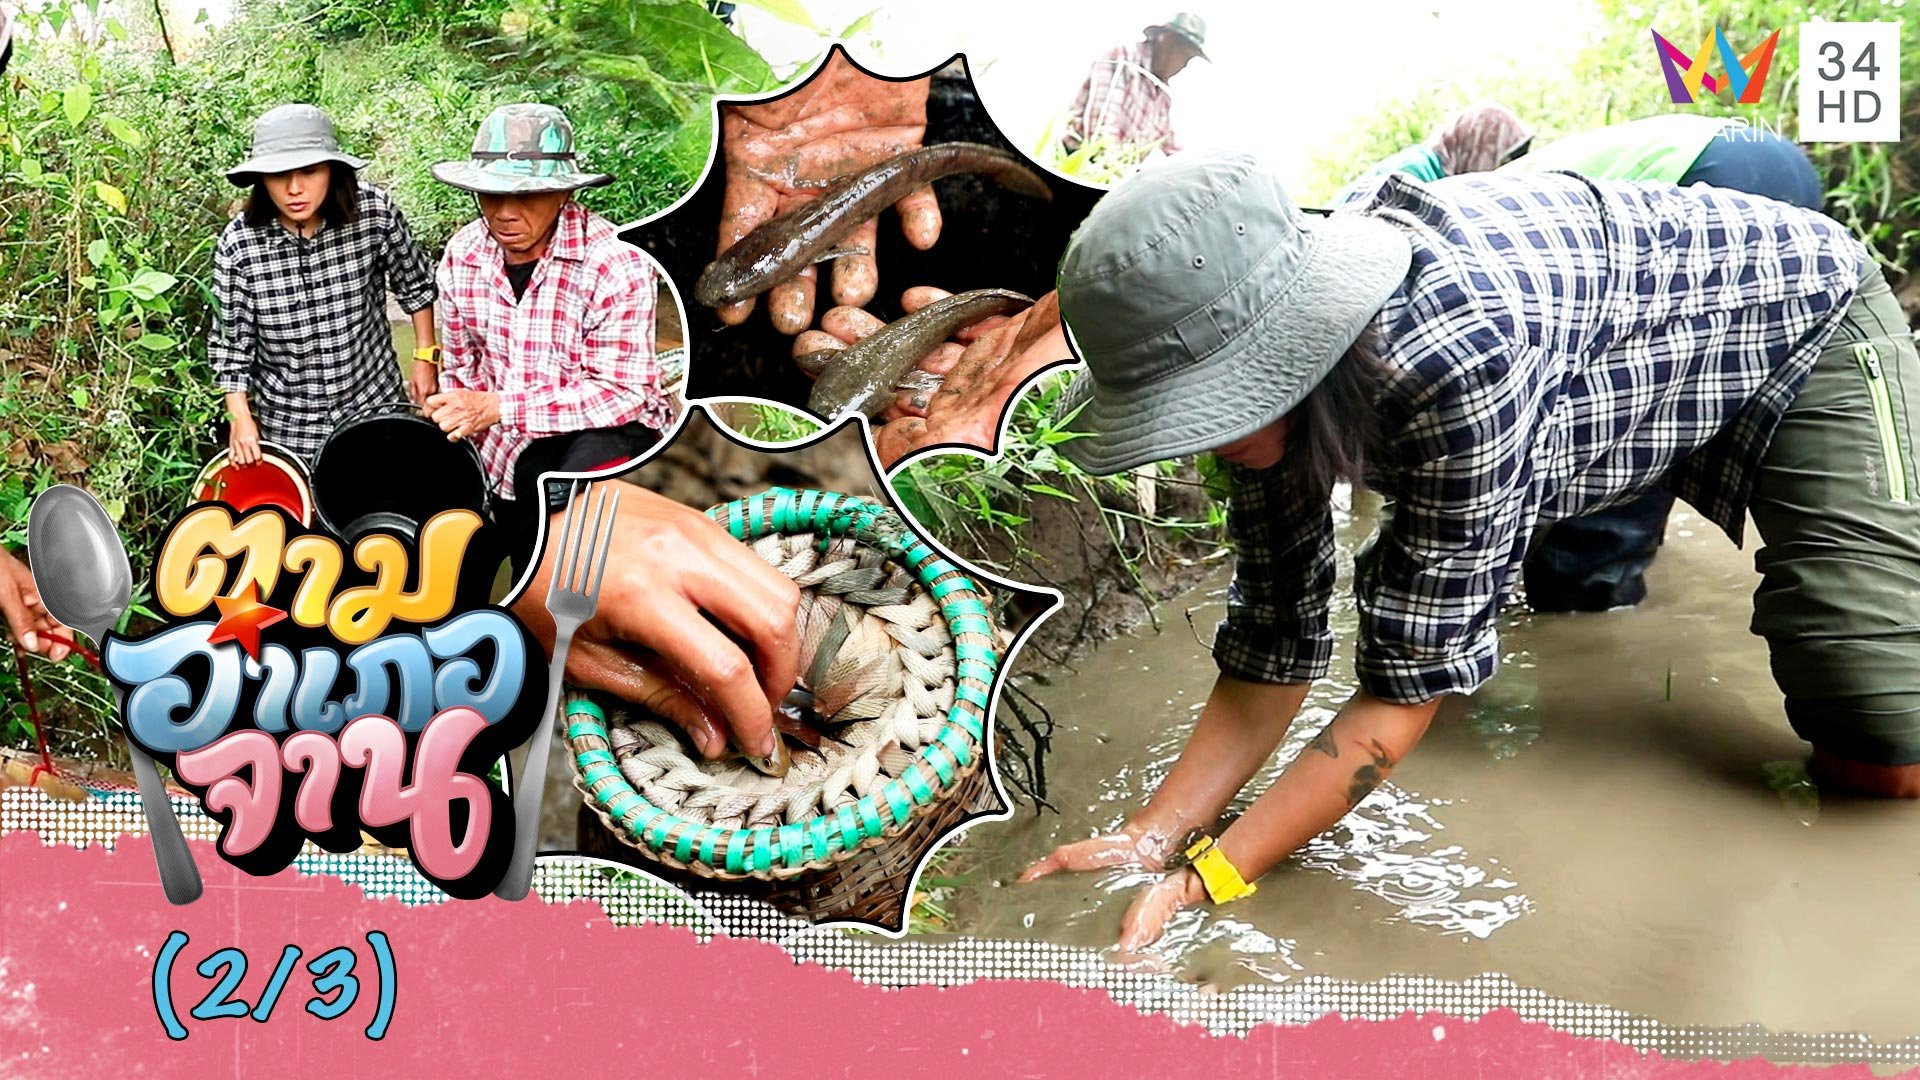 ขุดคันดิน-วิดน้ำ จับ 'ปลากั้ง' ด้วยมือเปล่า | ตามอำเภอจาน | 22 เม.ย. 66 (2/3) | AMARIN TVHD34